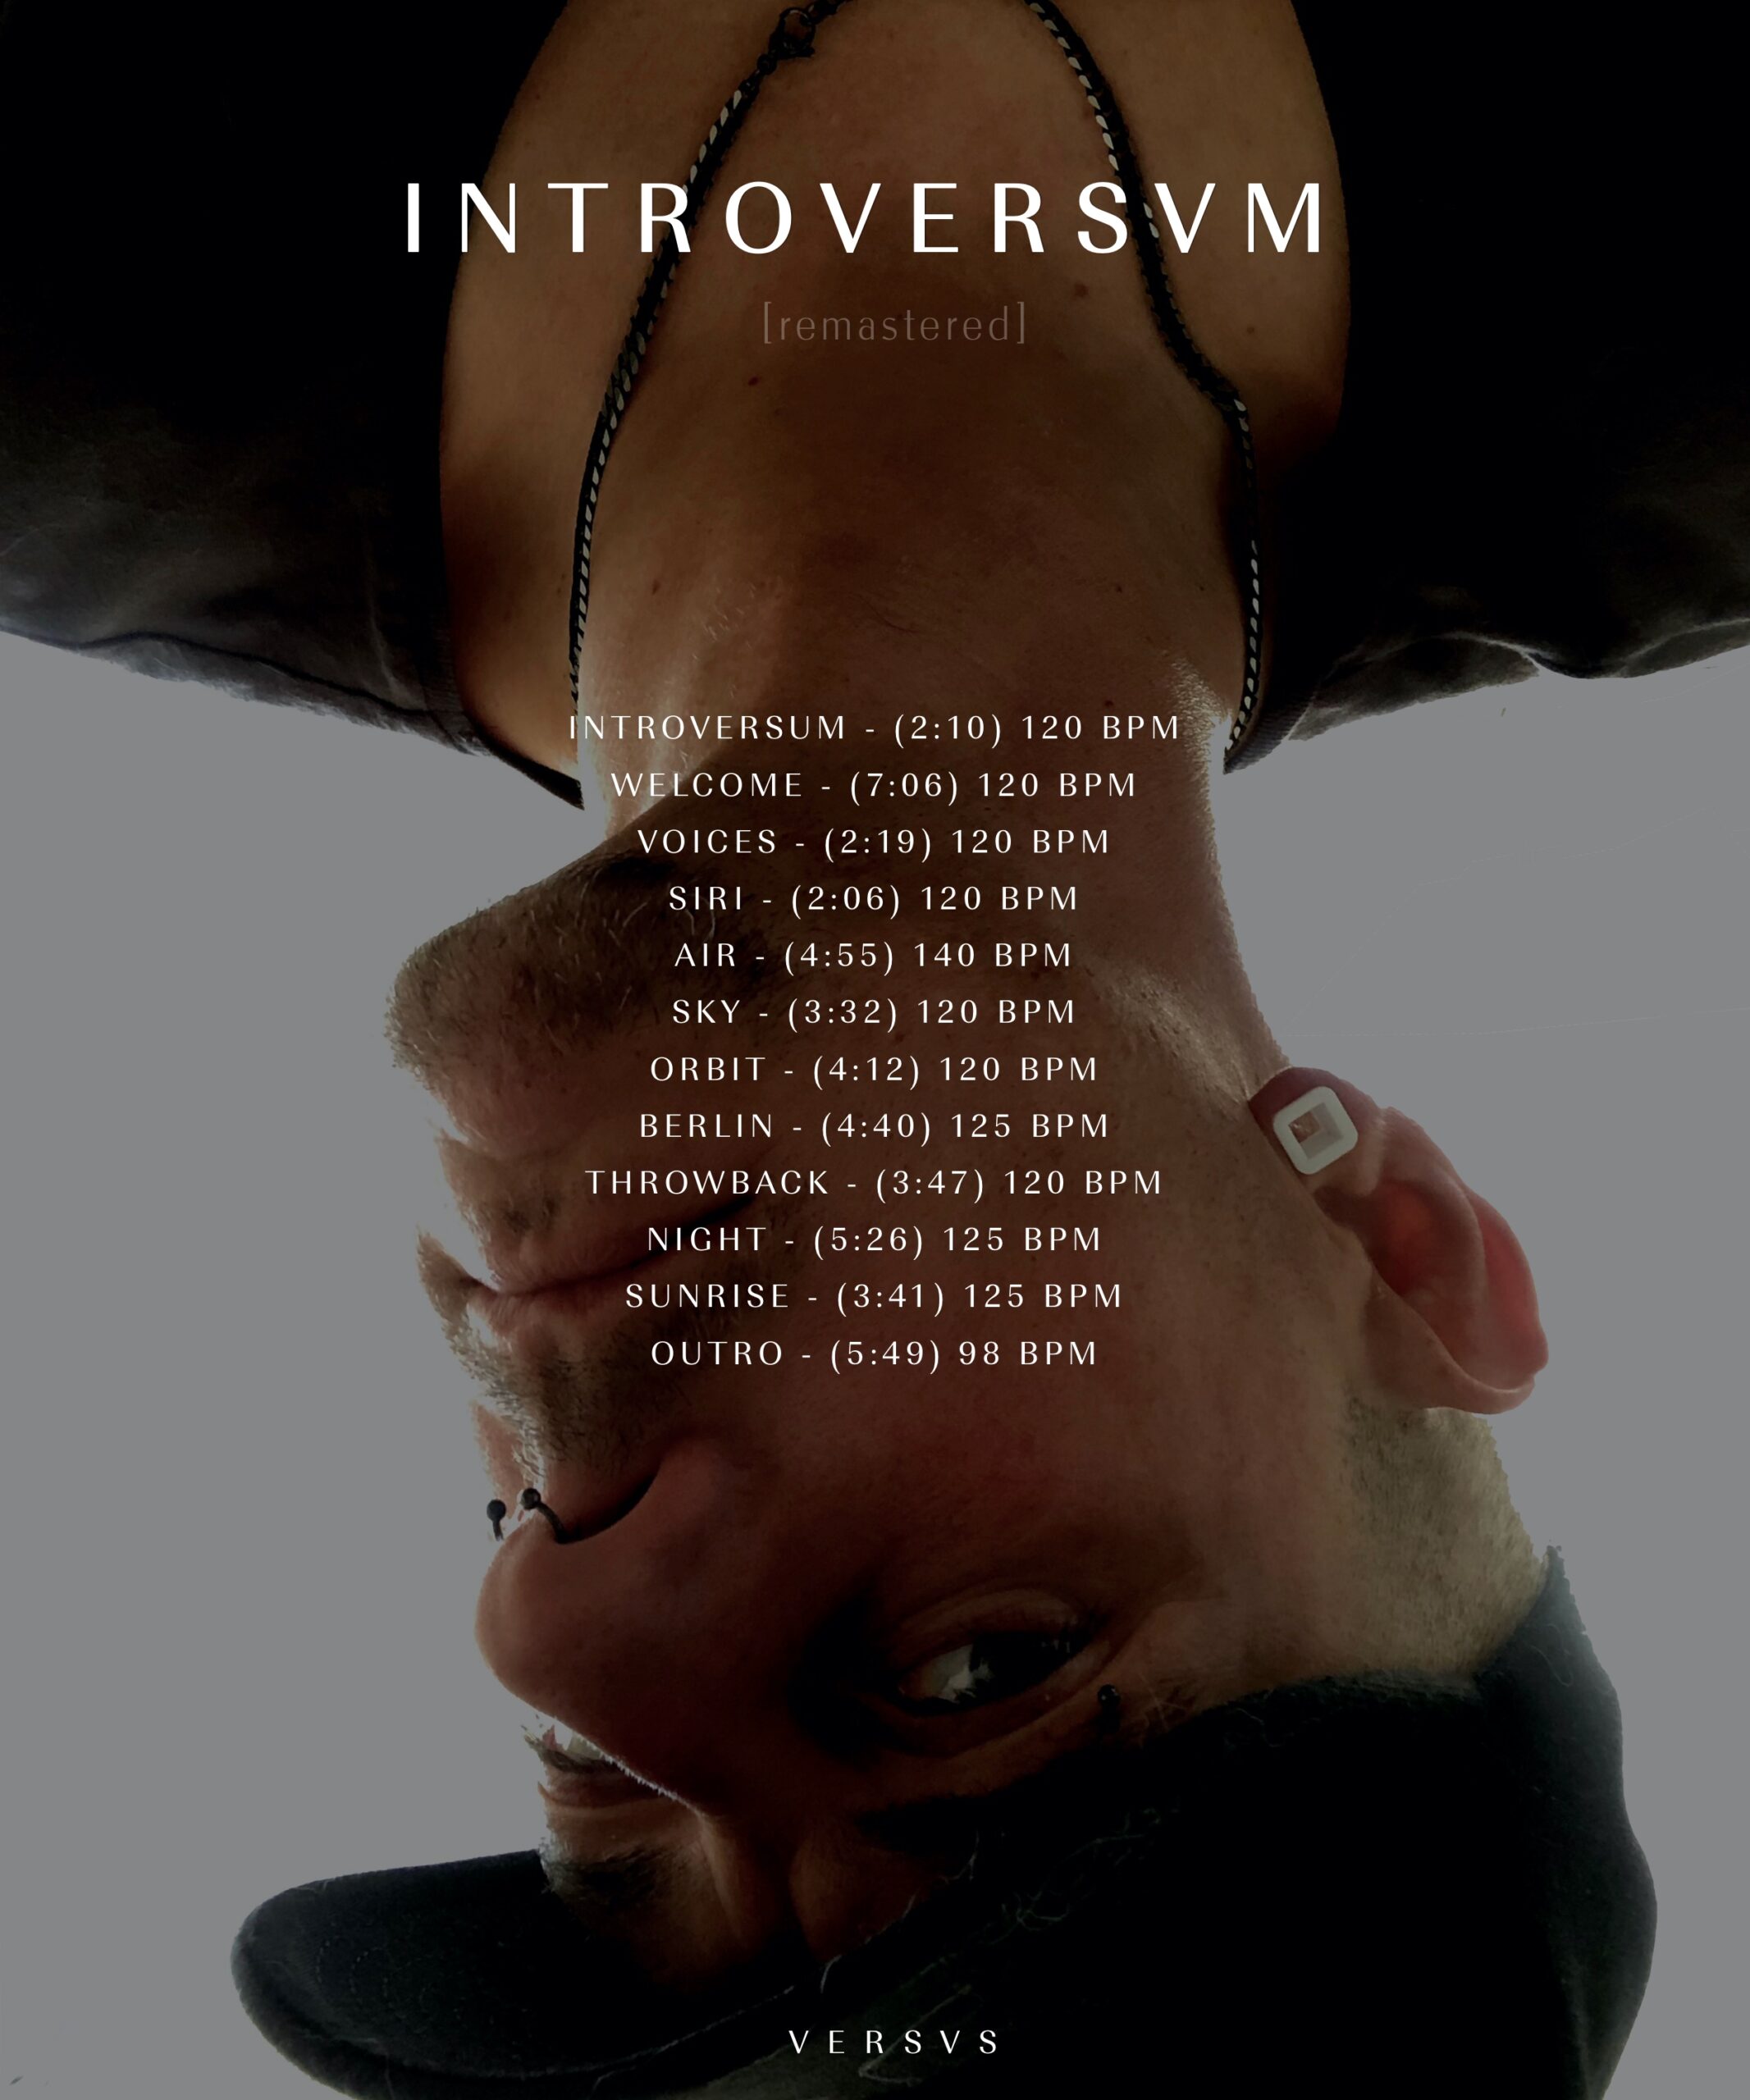 tracklist. trackliste / Titel vom Introversvm Introversum Album von Tommy Warzecha